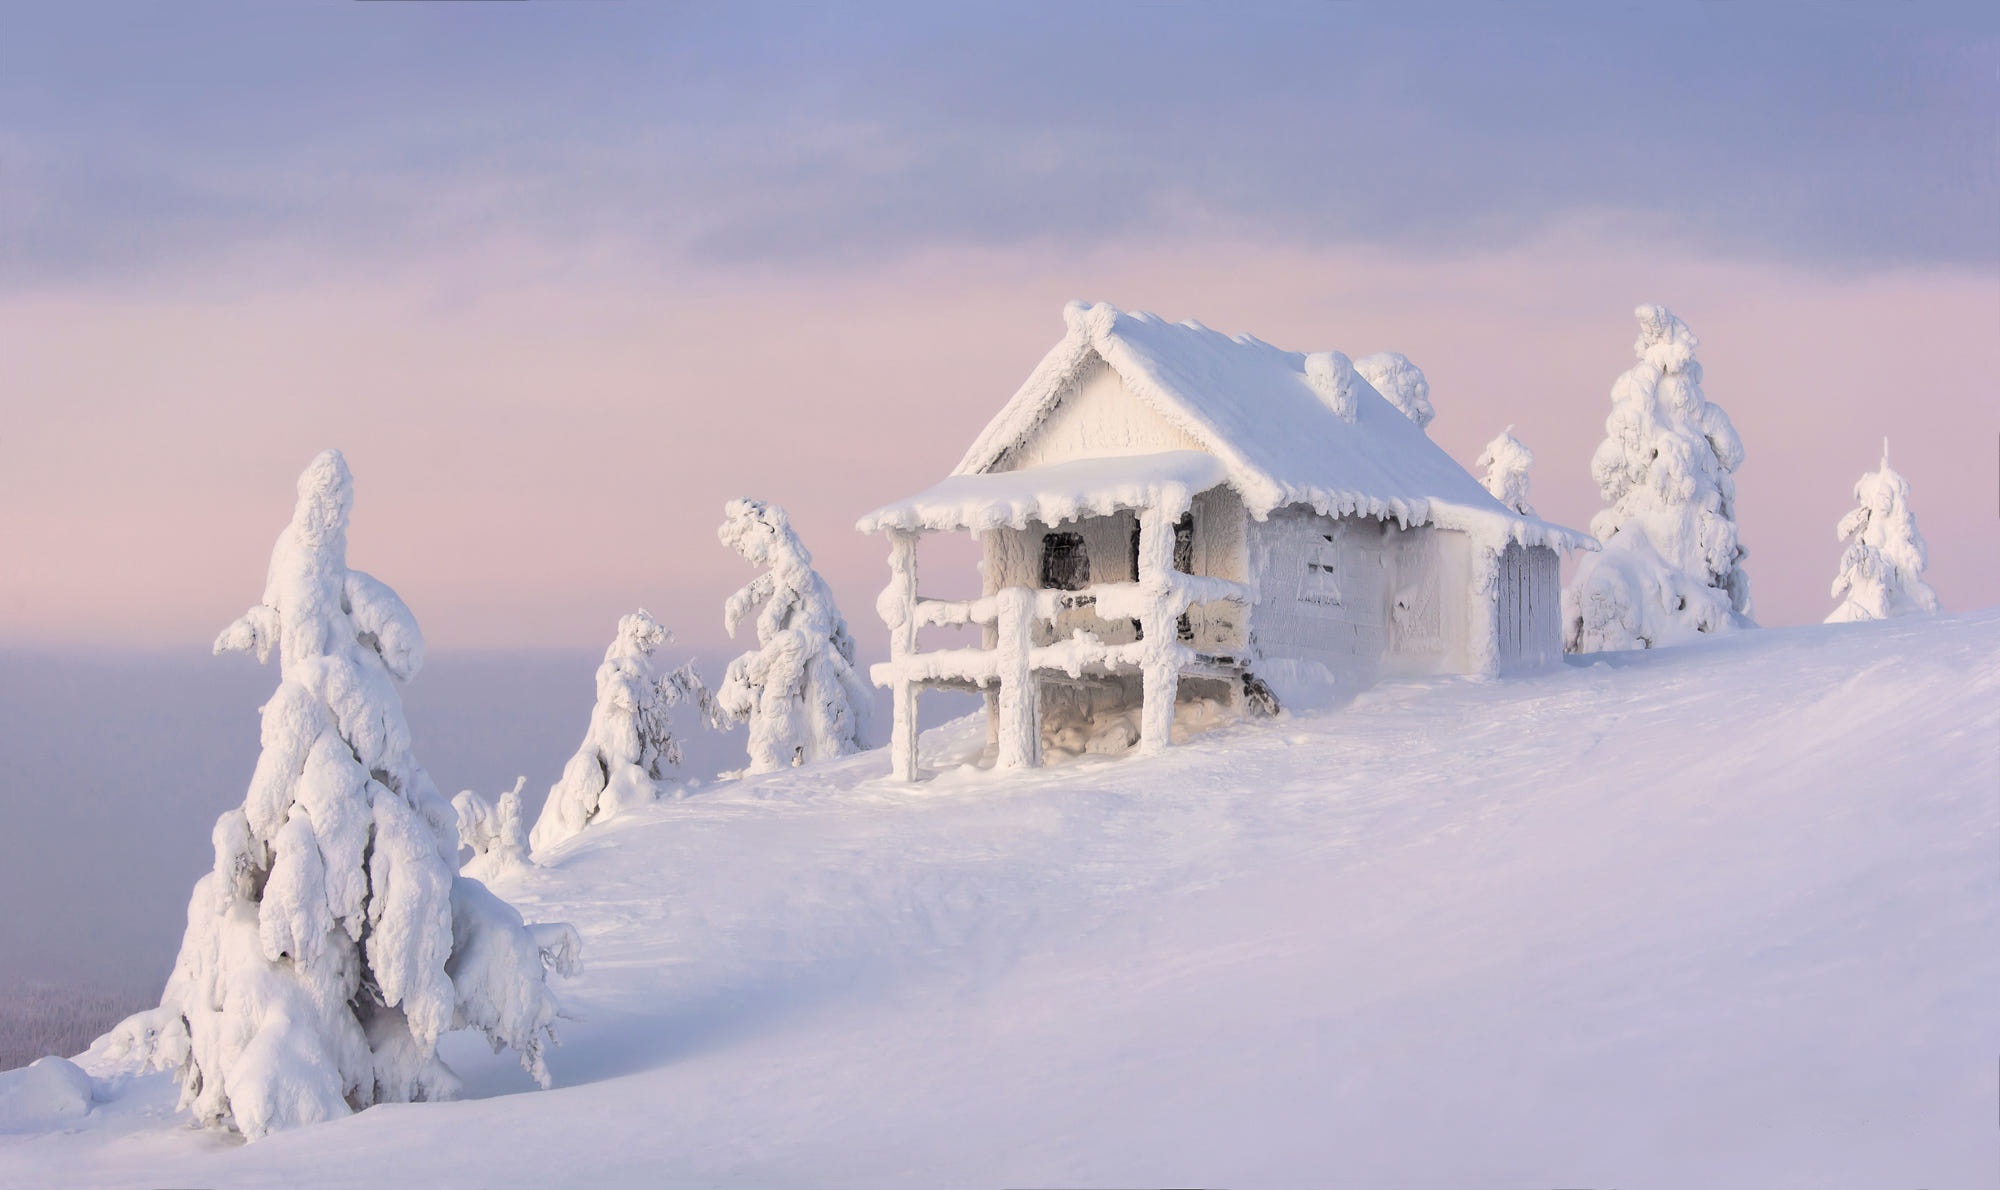 Скачать обои бесплатно Зима, Природа, Снег, Ель, Фотографии, Хижина картинка на рабочий стол ПК